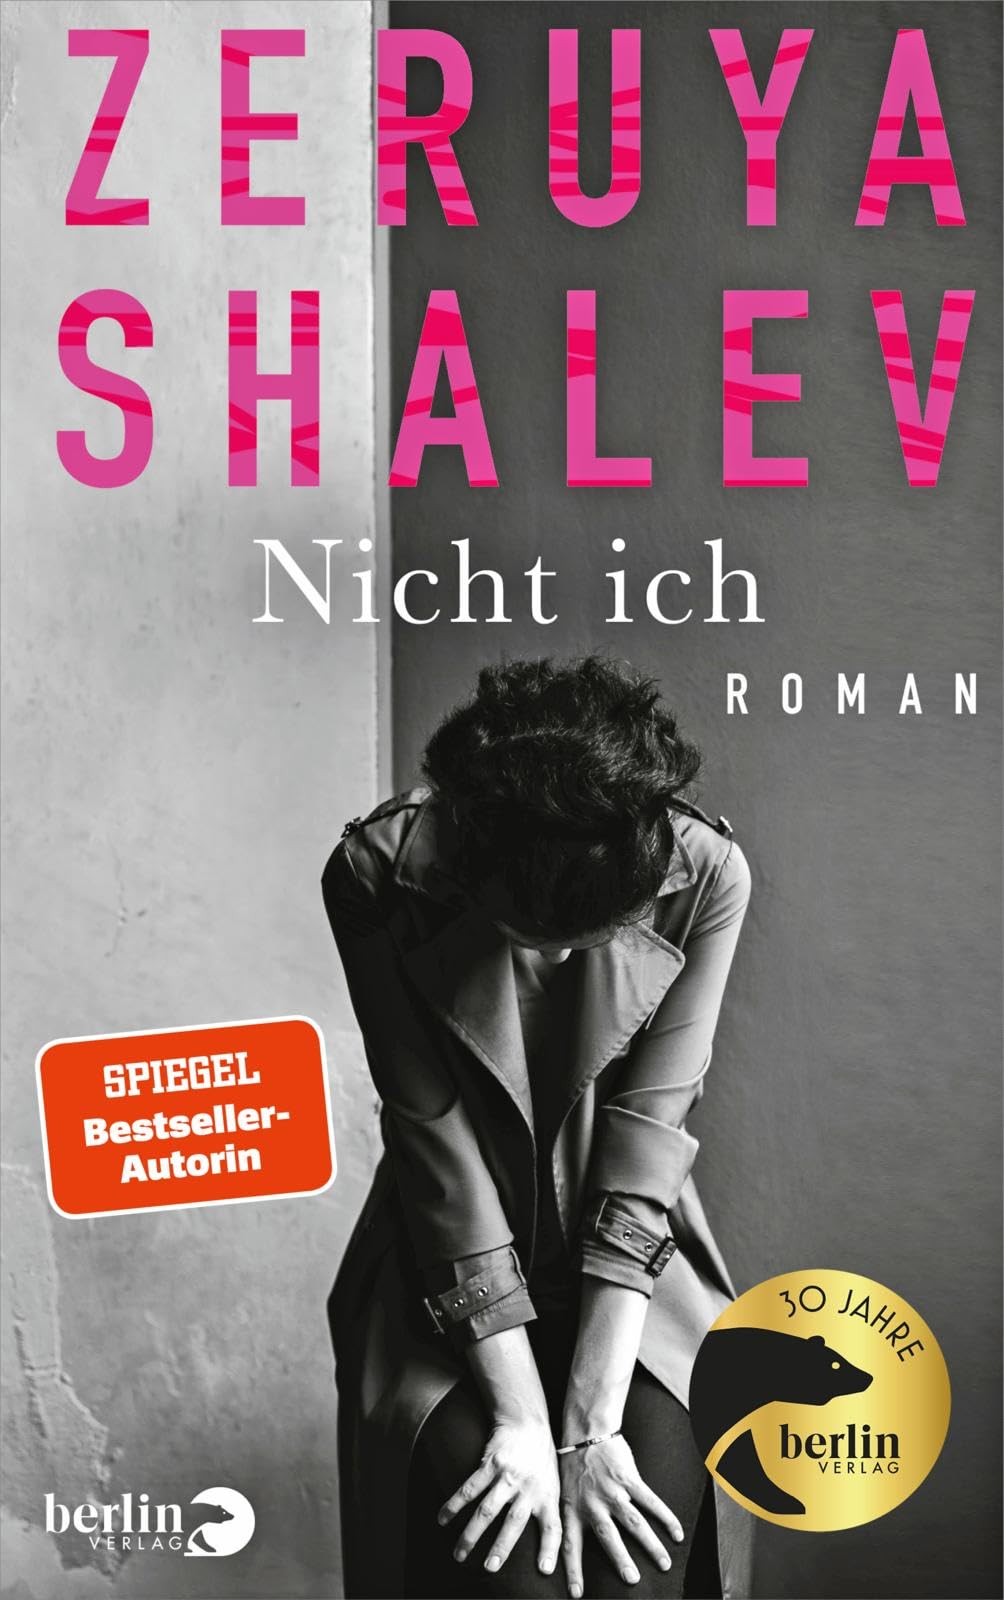 Cover of Zeruya Shalev's "Nicht Ich", published in German by Berlin Verlag